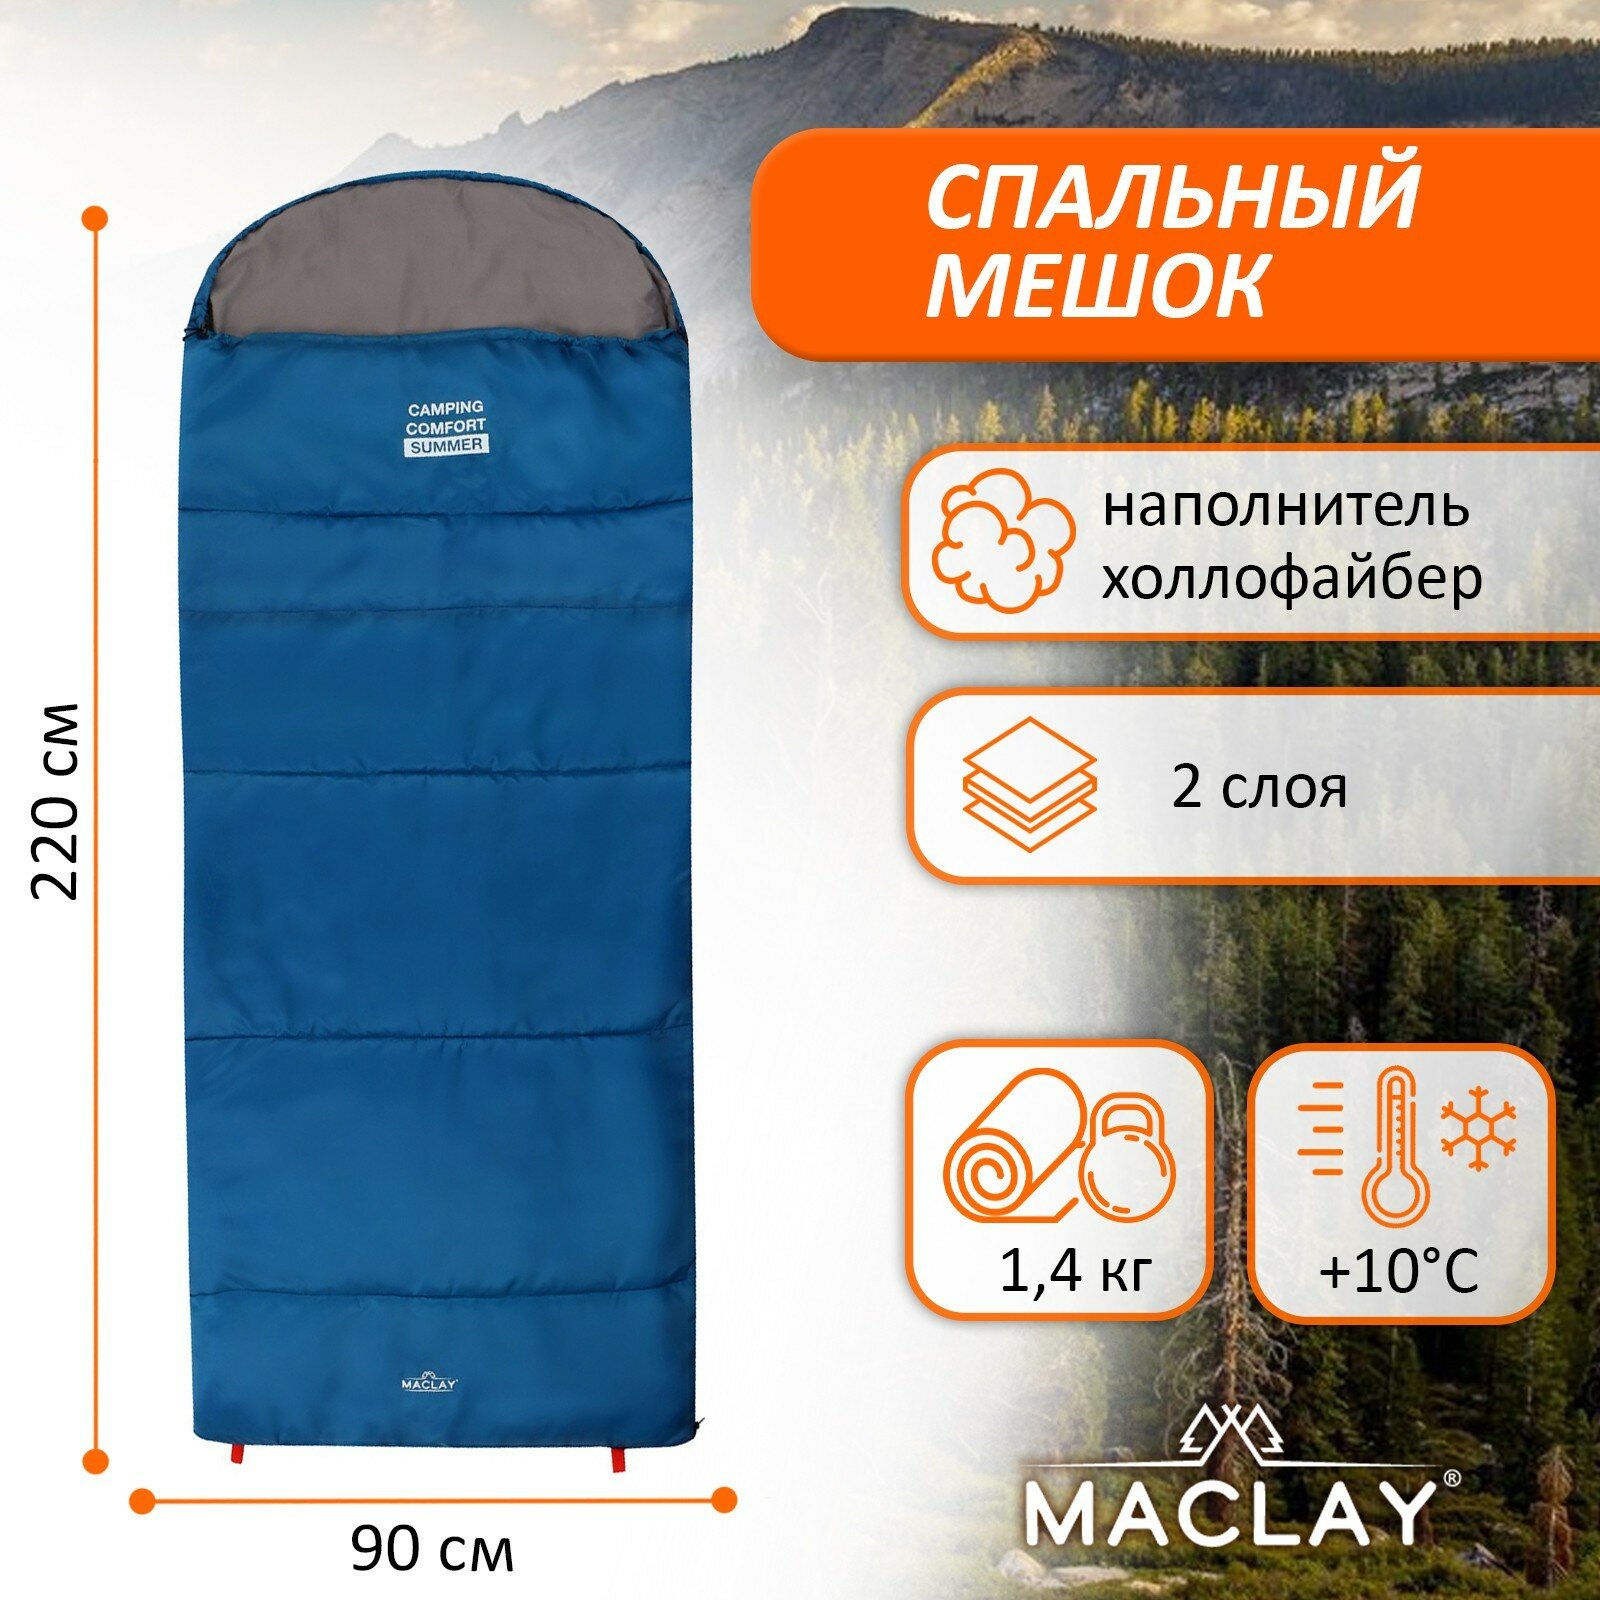 Спальный мешок camping comfort summer, 2 слоя, левый, с подголовником, 220х90 см, +10/+25°С